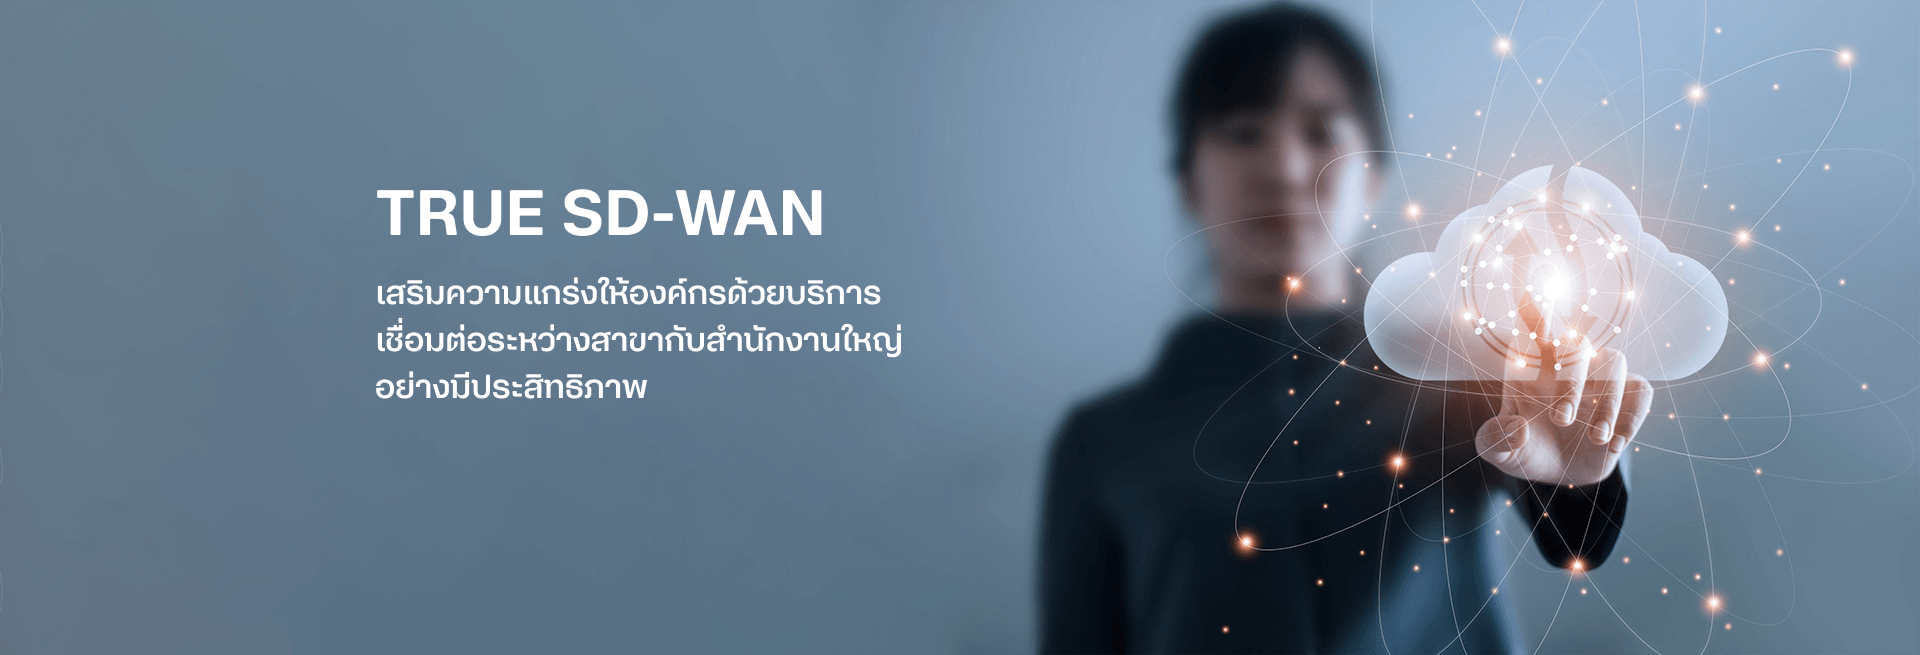 banner-true-sd-wan-desktop